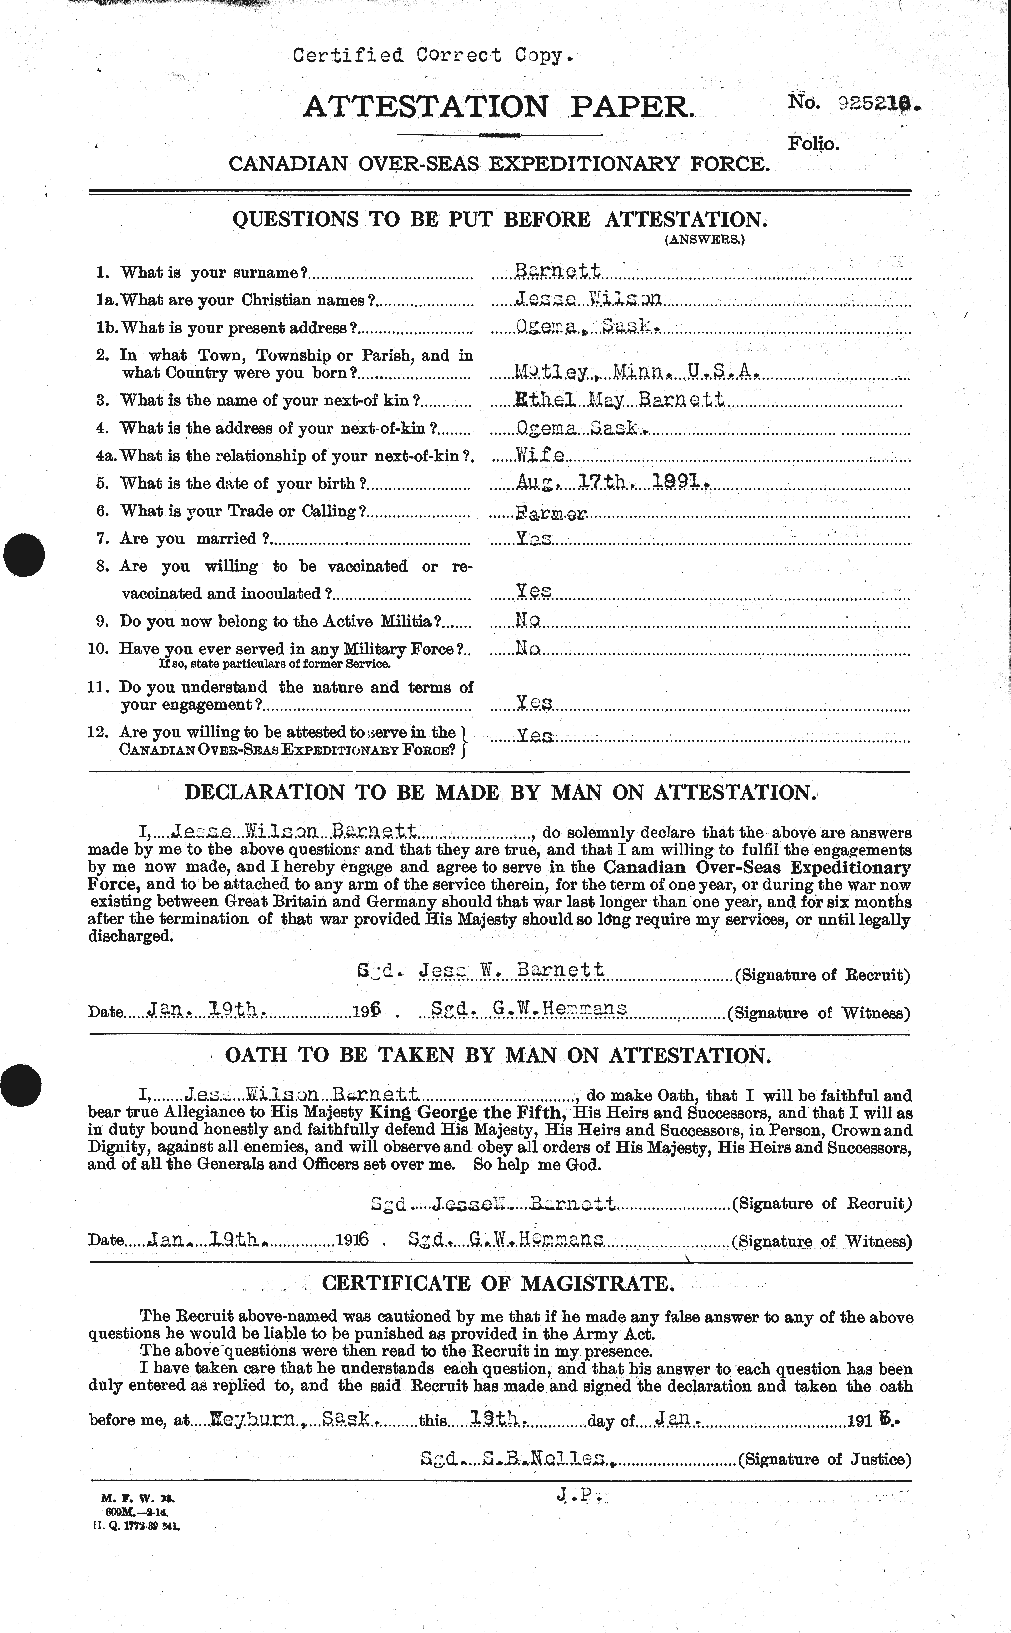 Dossiers du Personnel de la Première Guerre mondiale - CEC 222939a